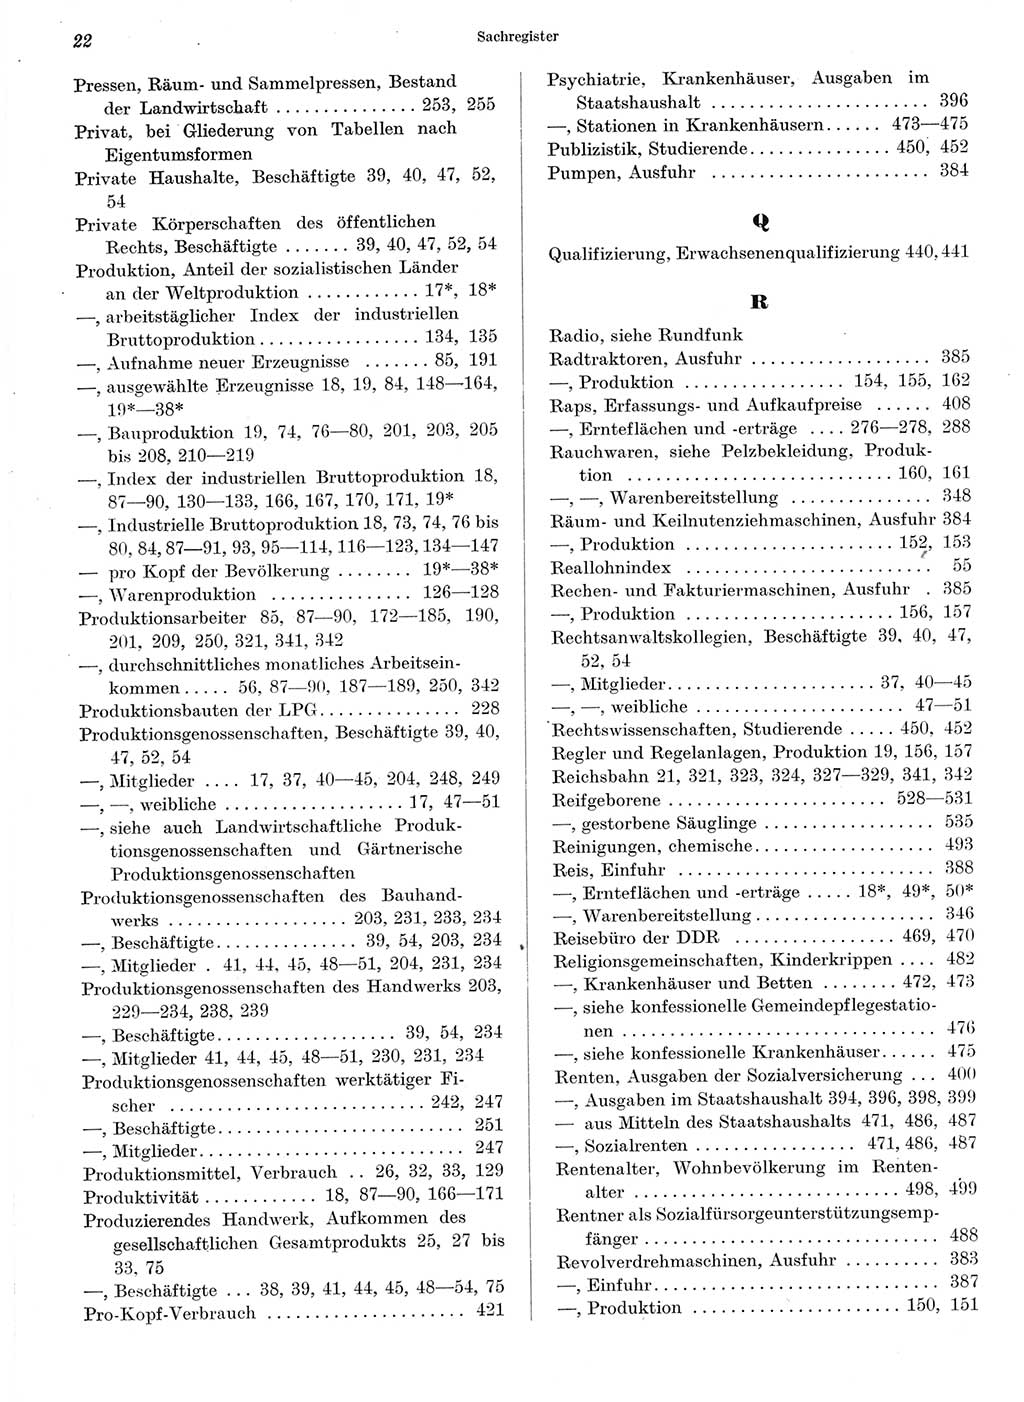 Statistisches Jahrbuch der Deutschen Demokratischen Republik (DDR) 1964, Seite 22 (Stat. Jb. DDR 1964, S. 22)